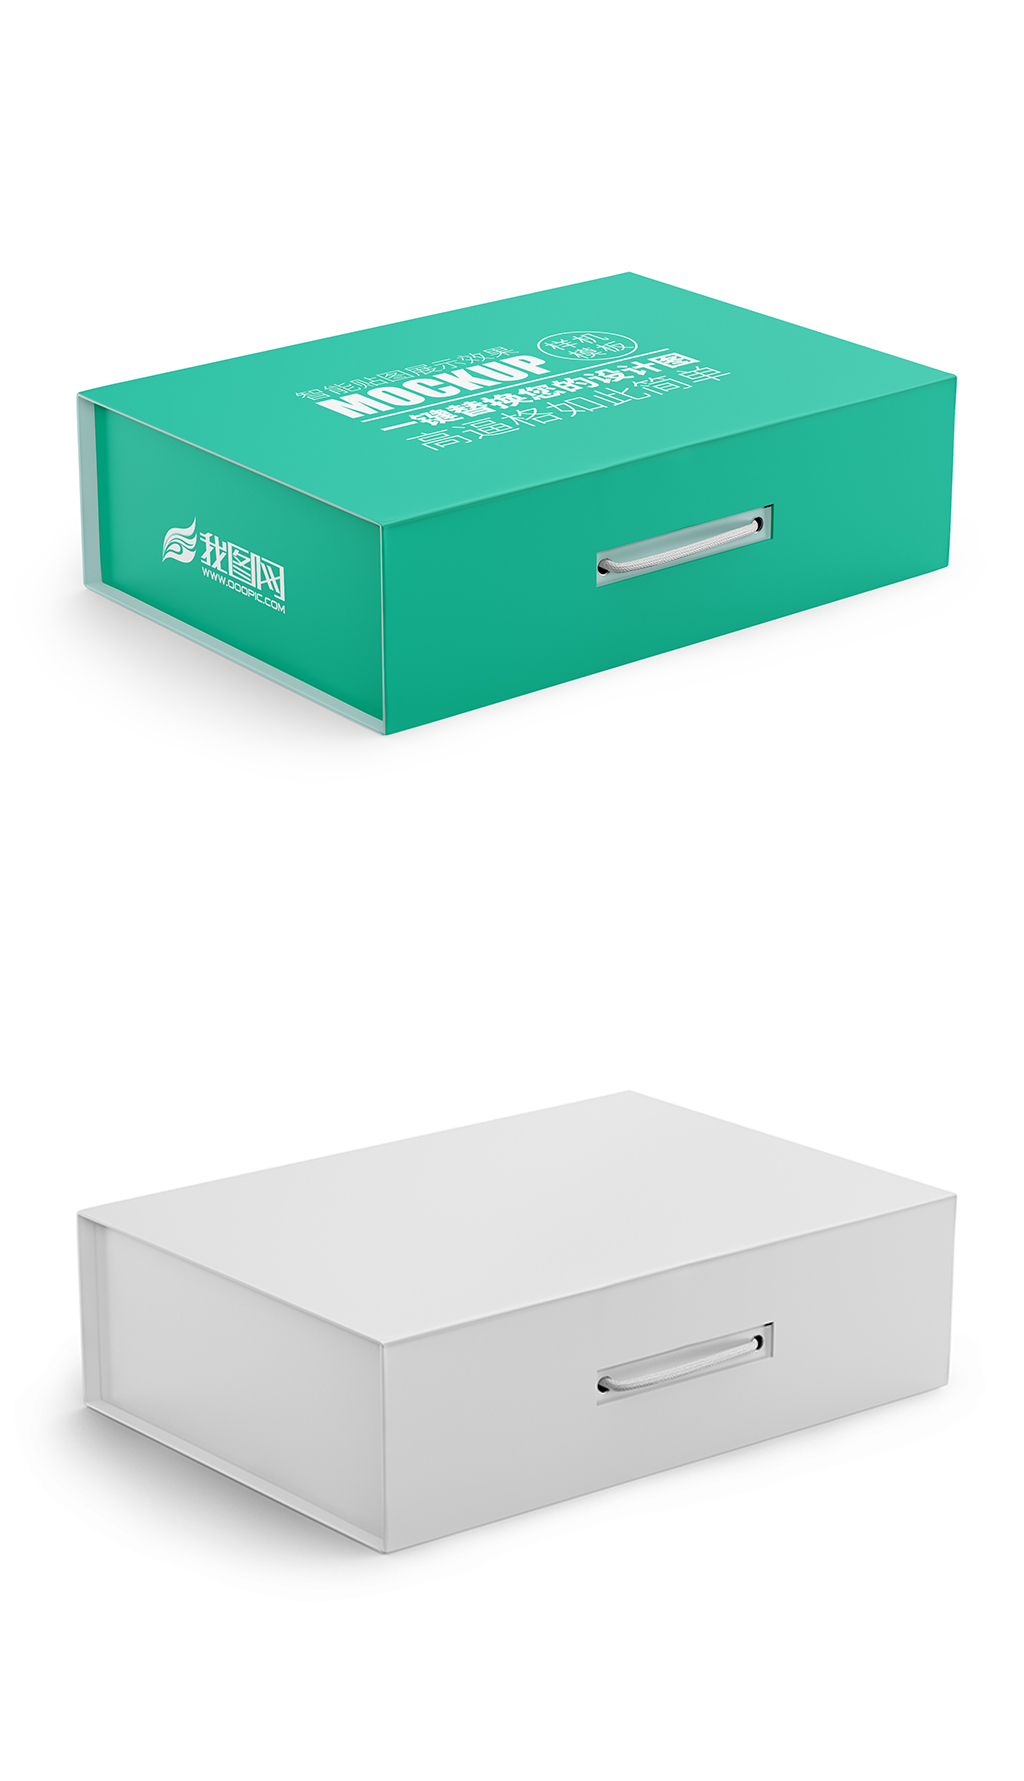 原创手提箱纸盒包装礼盒设计效果图样机-版权可商用